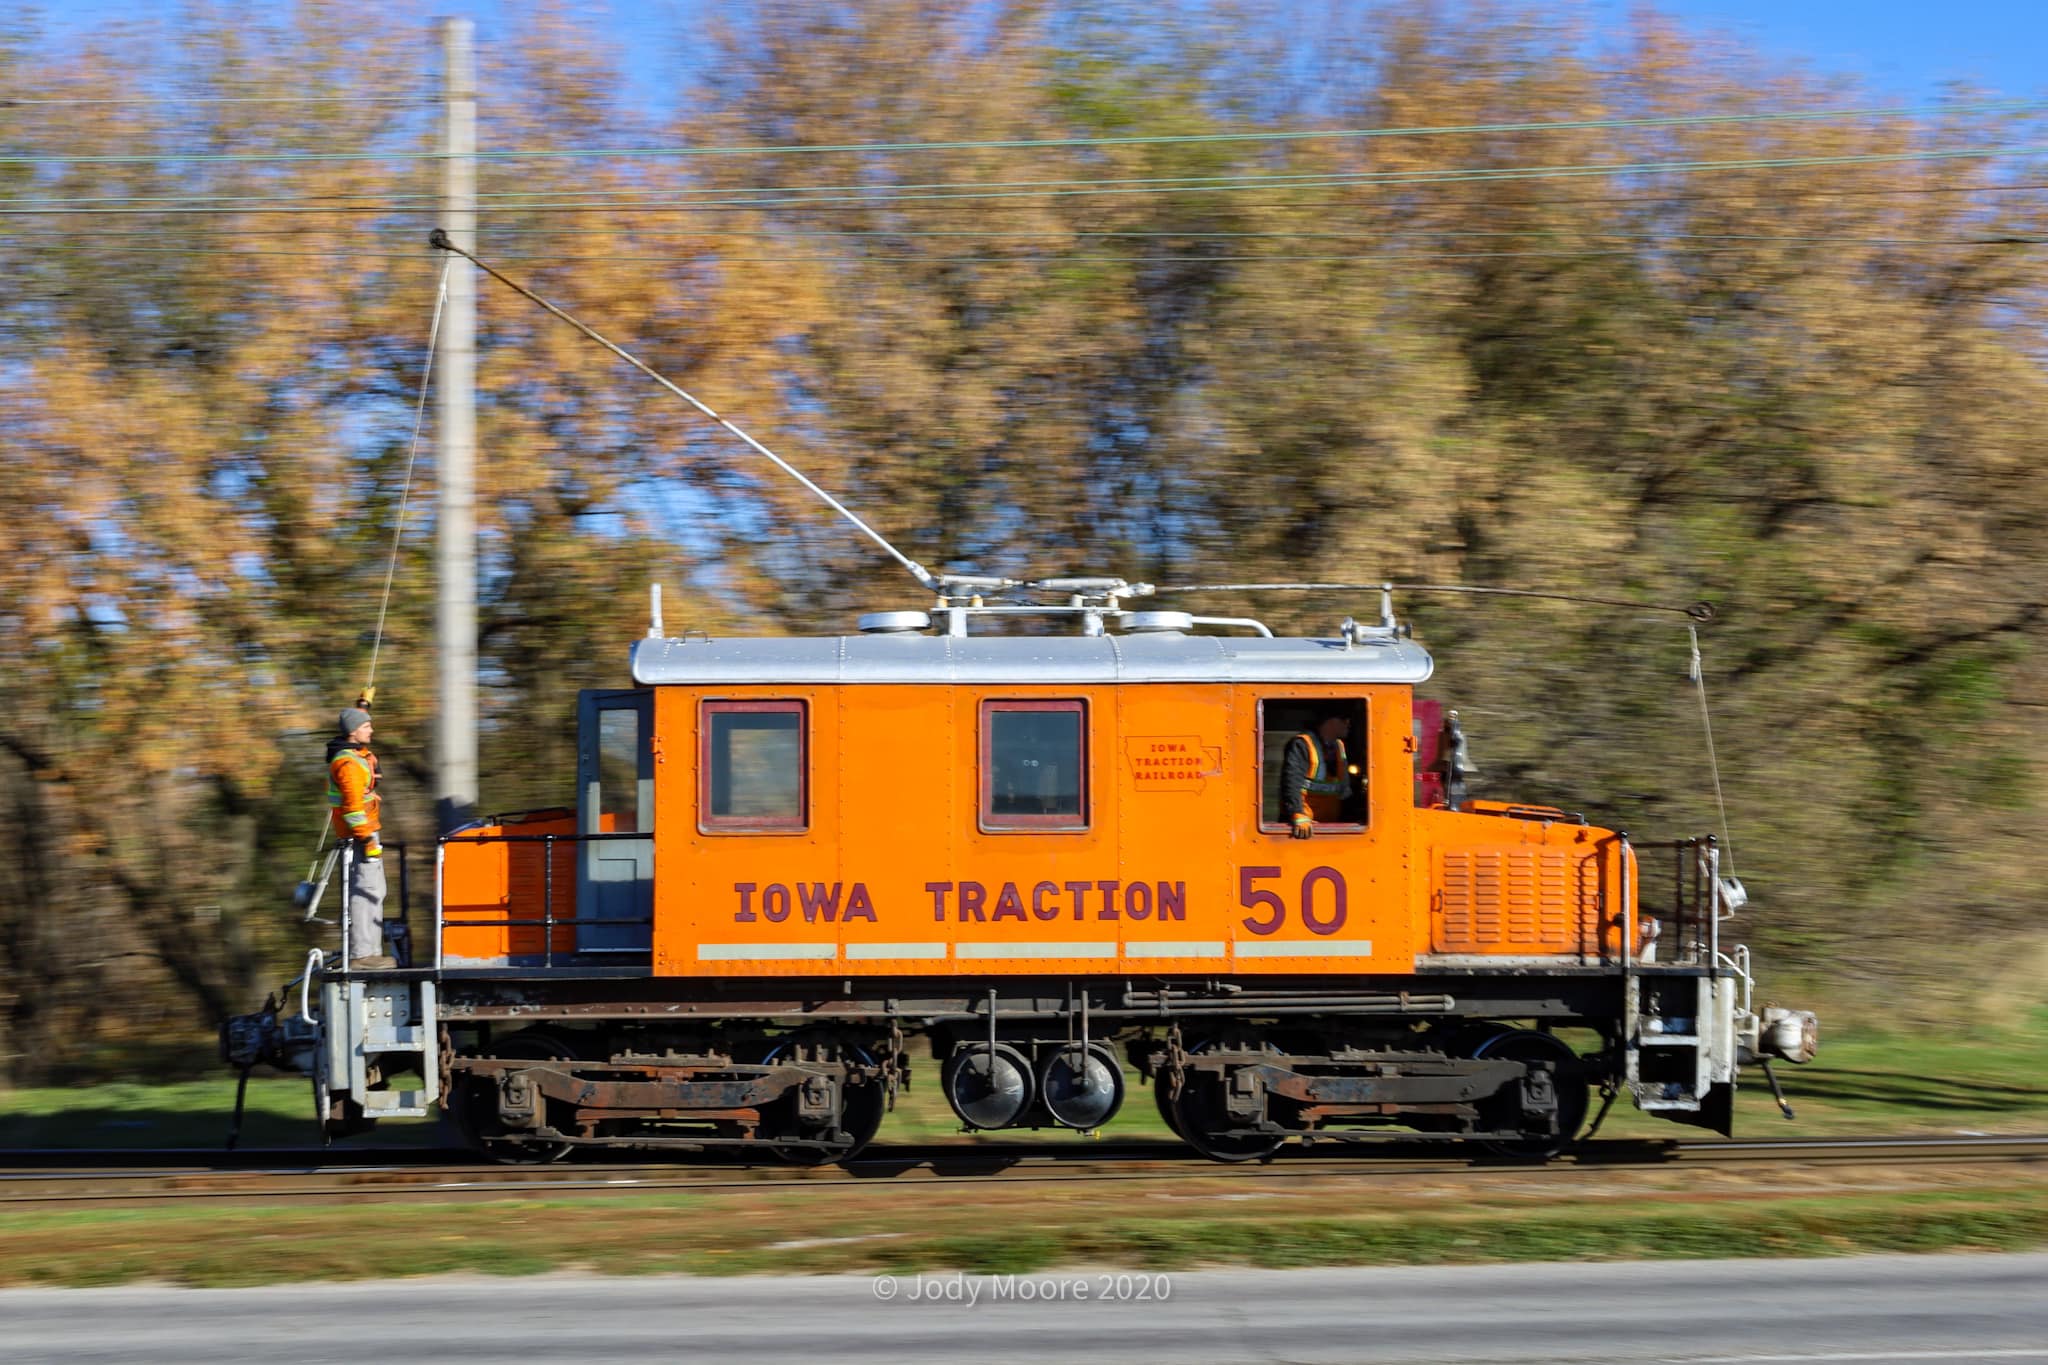 Iowa Traction 50